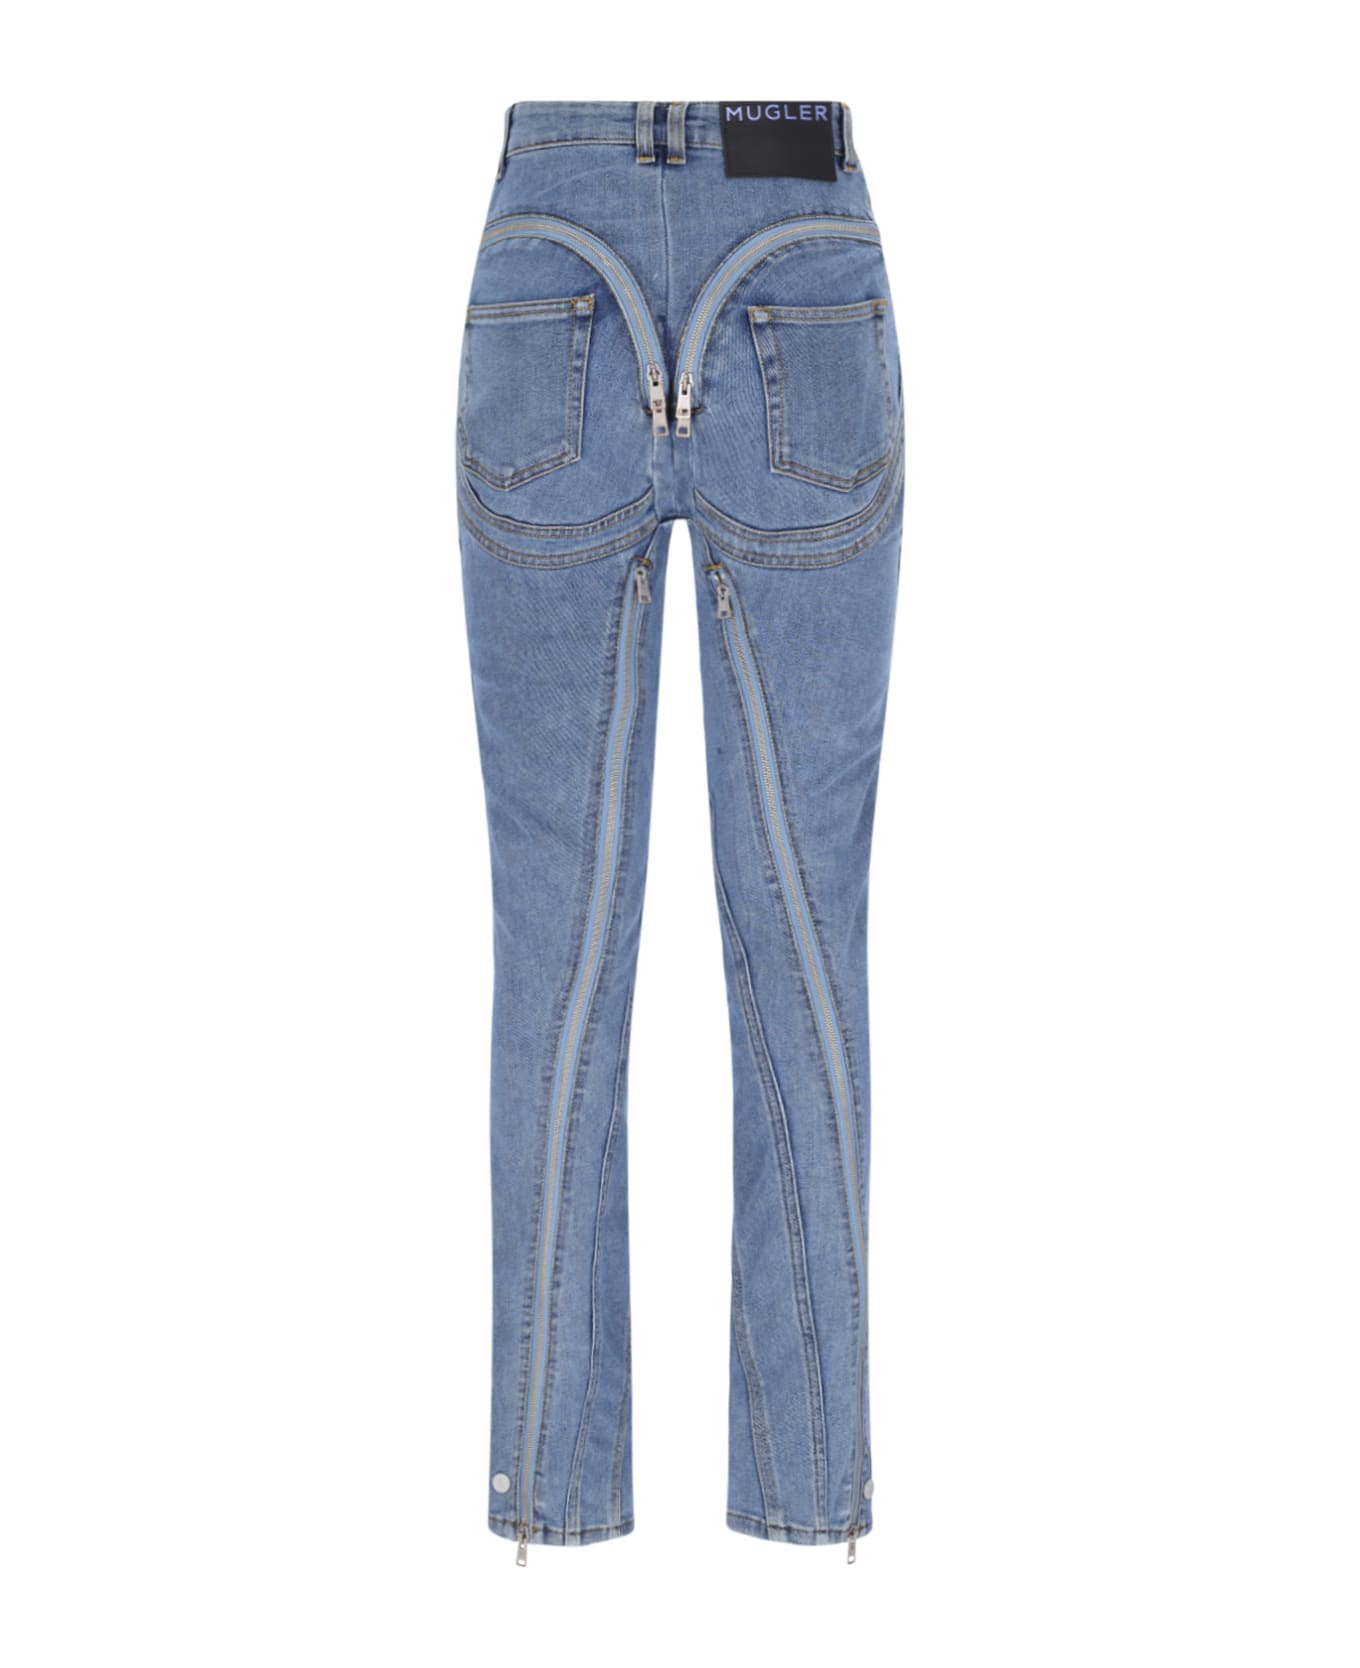 Mugler 'zipped Spiral' Jeans - Light Blue